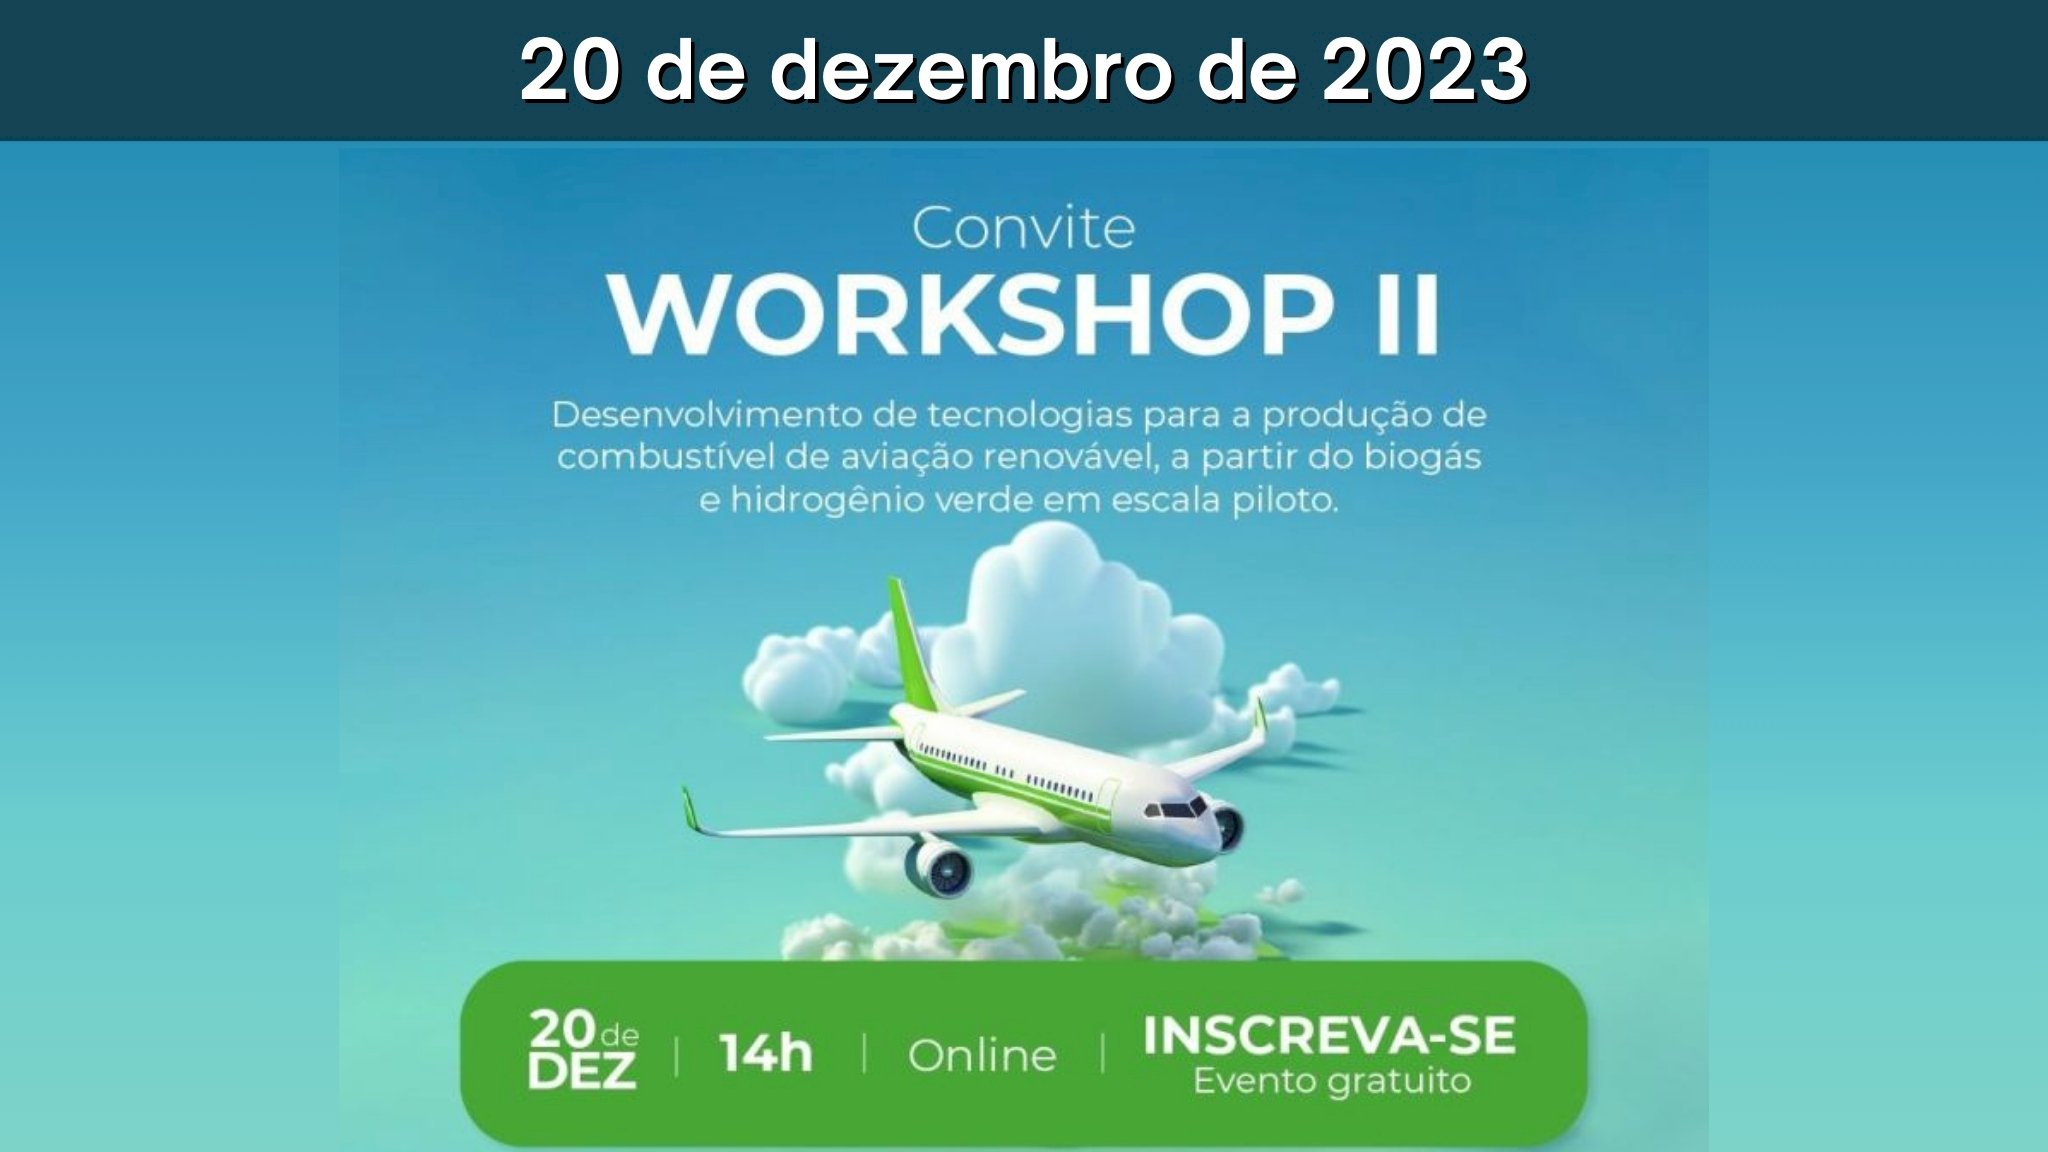 Workshop II: Desenvolvimento de tecnologias para a produção de combustível de aviação renovável, a partir do biogás e hidrogênio verde em escala piloto